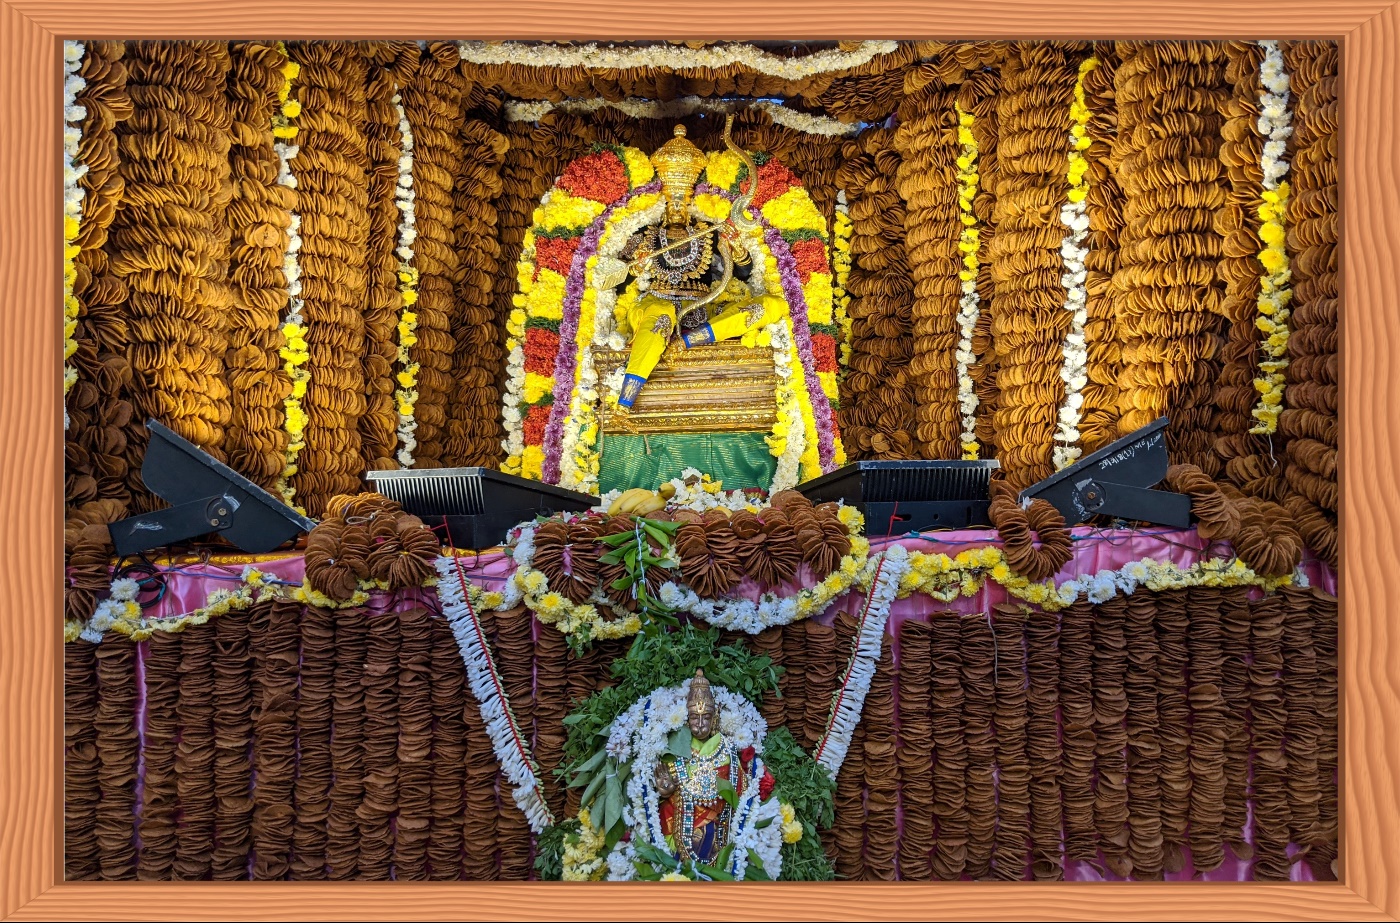 One Lakh "Vada" Garland for Lord Sri Hanuman Jayanthi at Sri Tiripurasundari Temple in Ashok Nagar, Chennai